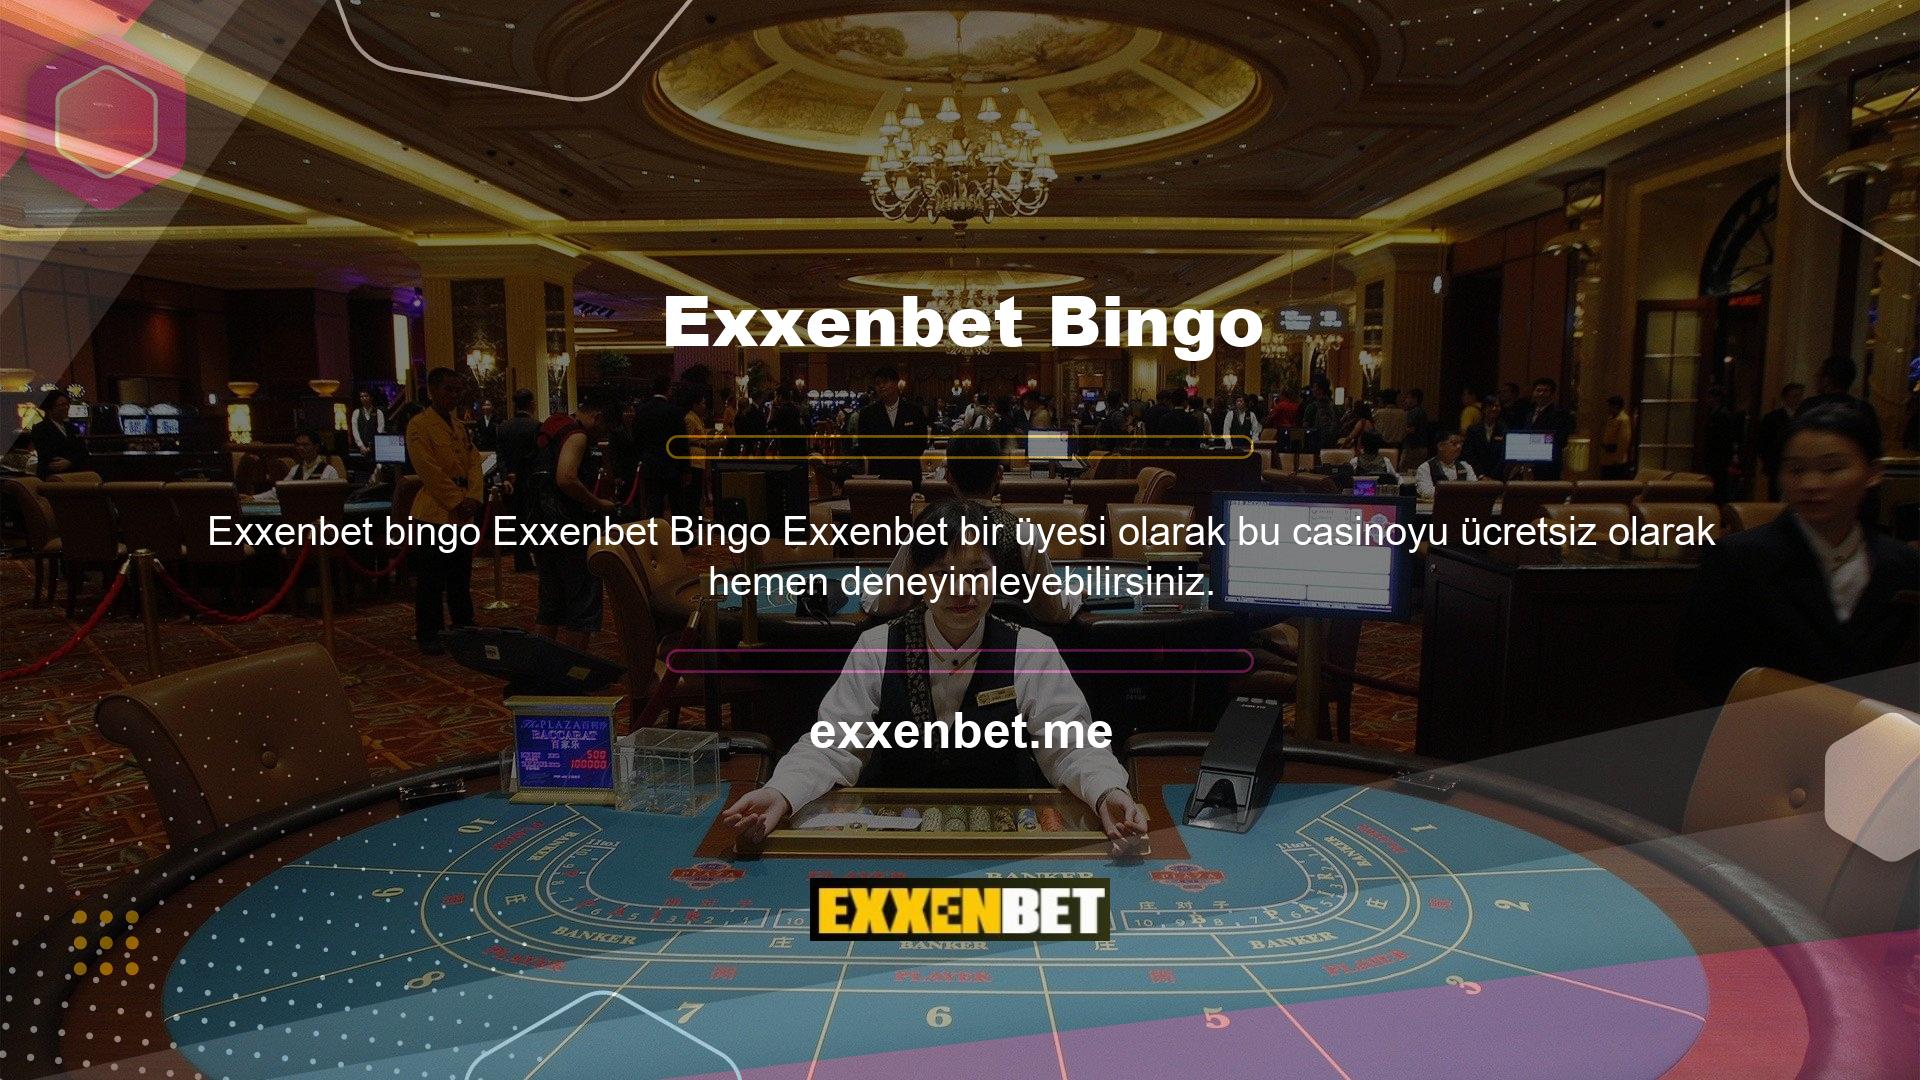 Exxenbet Bingo, Exxenbet Bingo web sitesinin kullanıcılarına sunduğu faydalı ve eğlenceli oyun seçeneklerinden sadece bir tanesidir